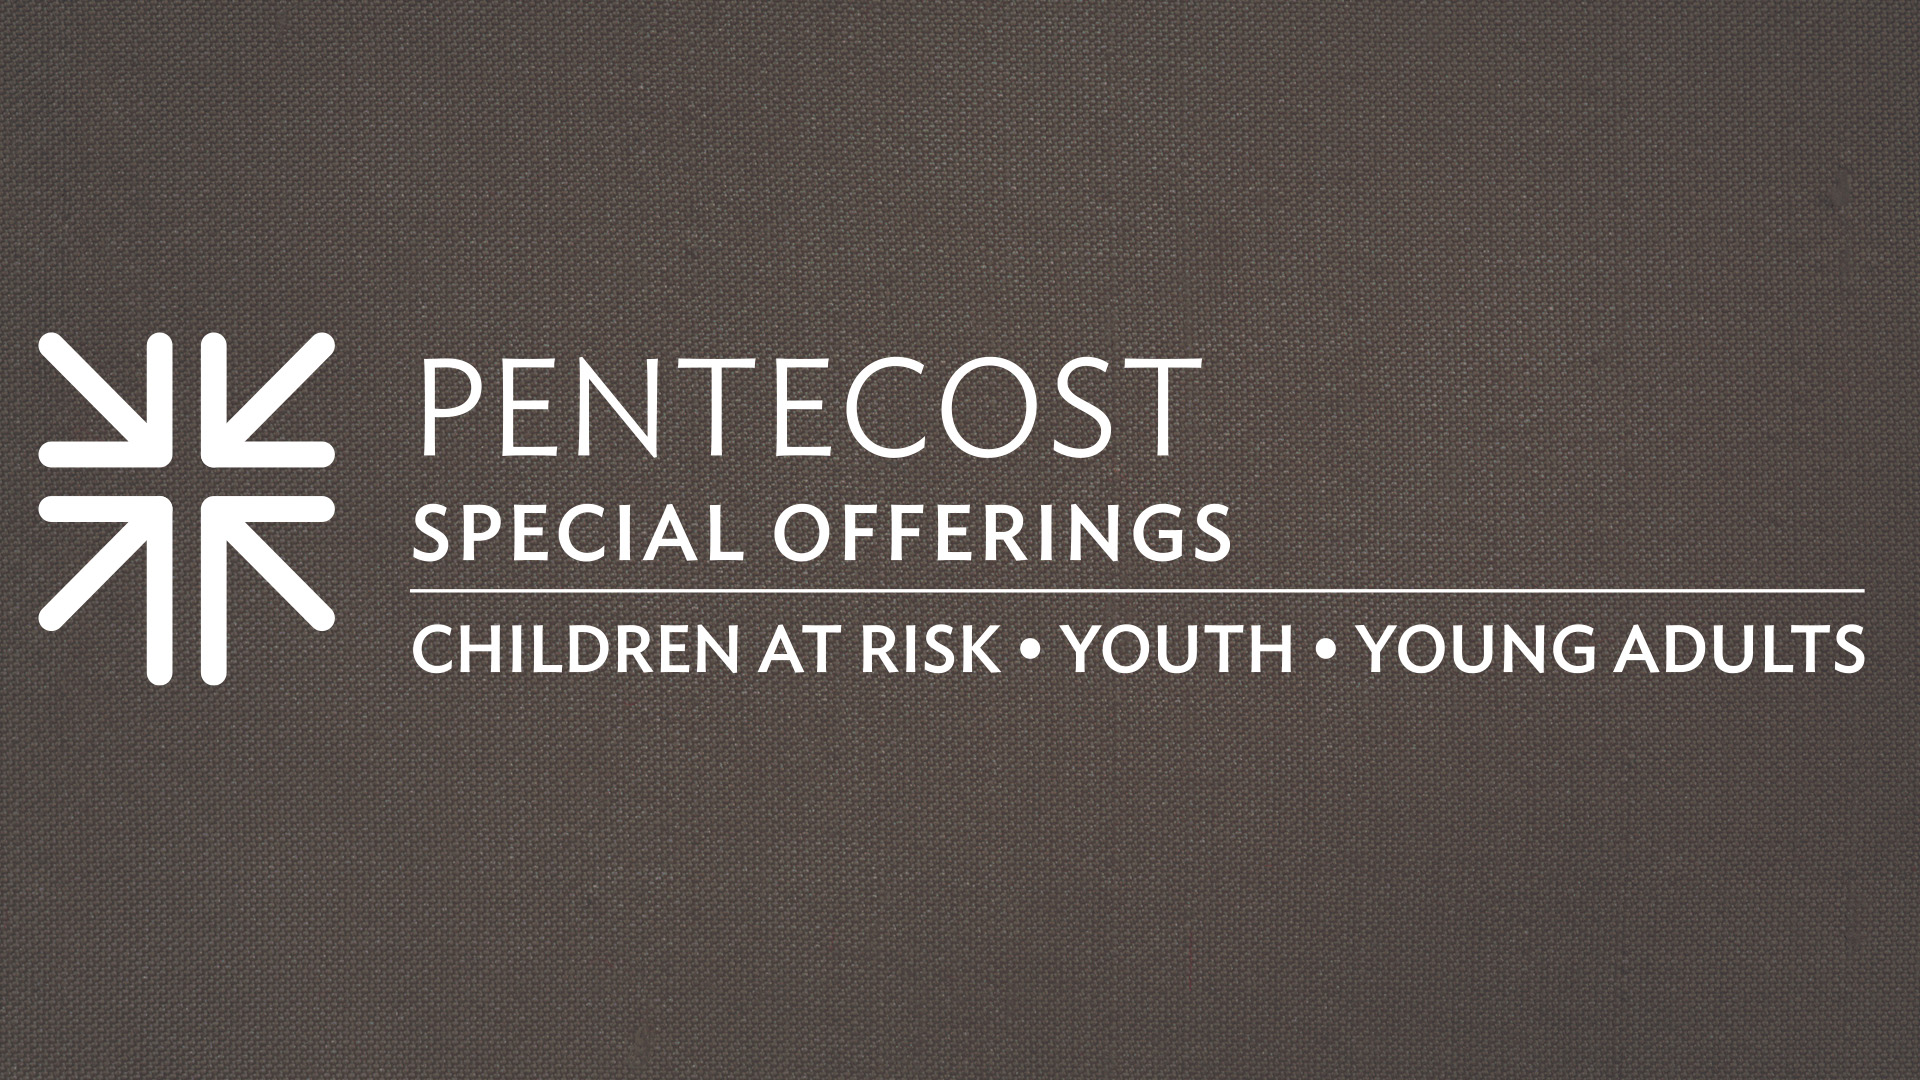 Presbyterian Special Offerings Pentecost